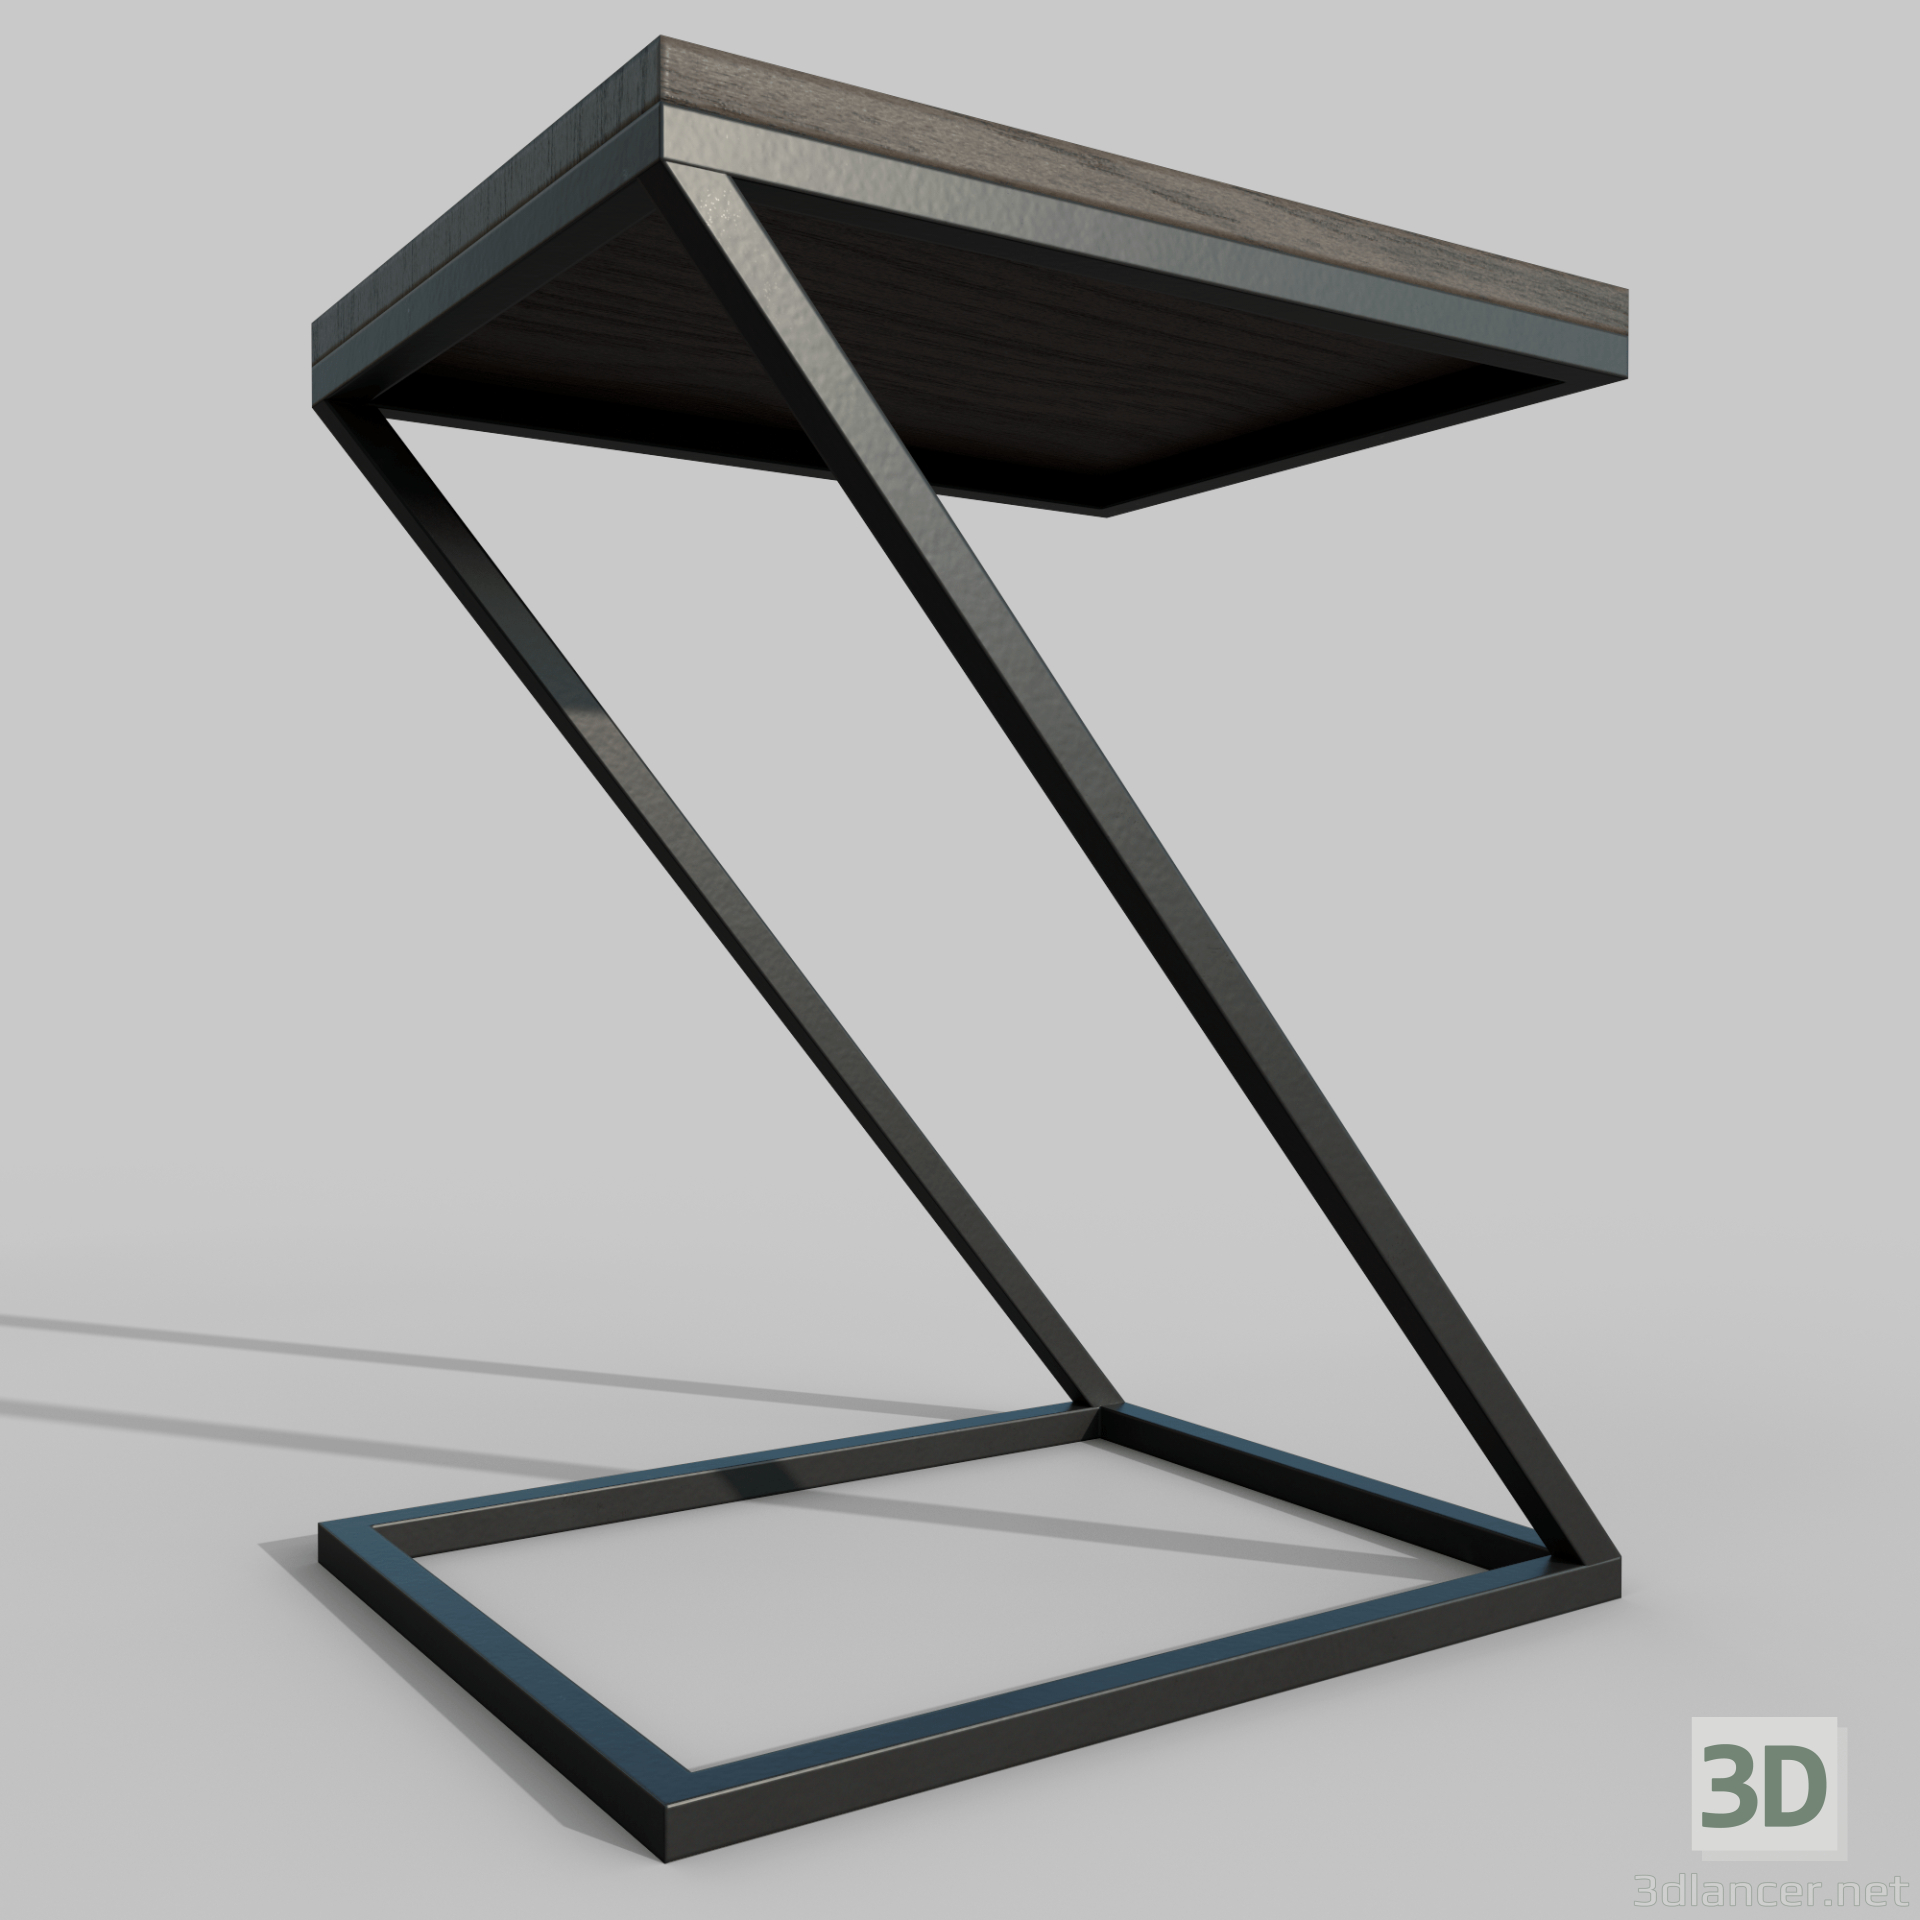 3d chair concept model buy - render